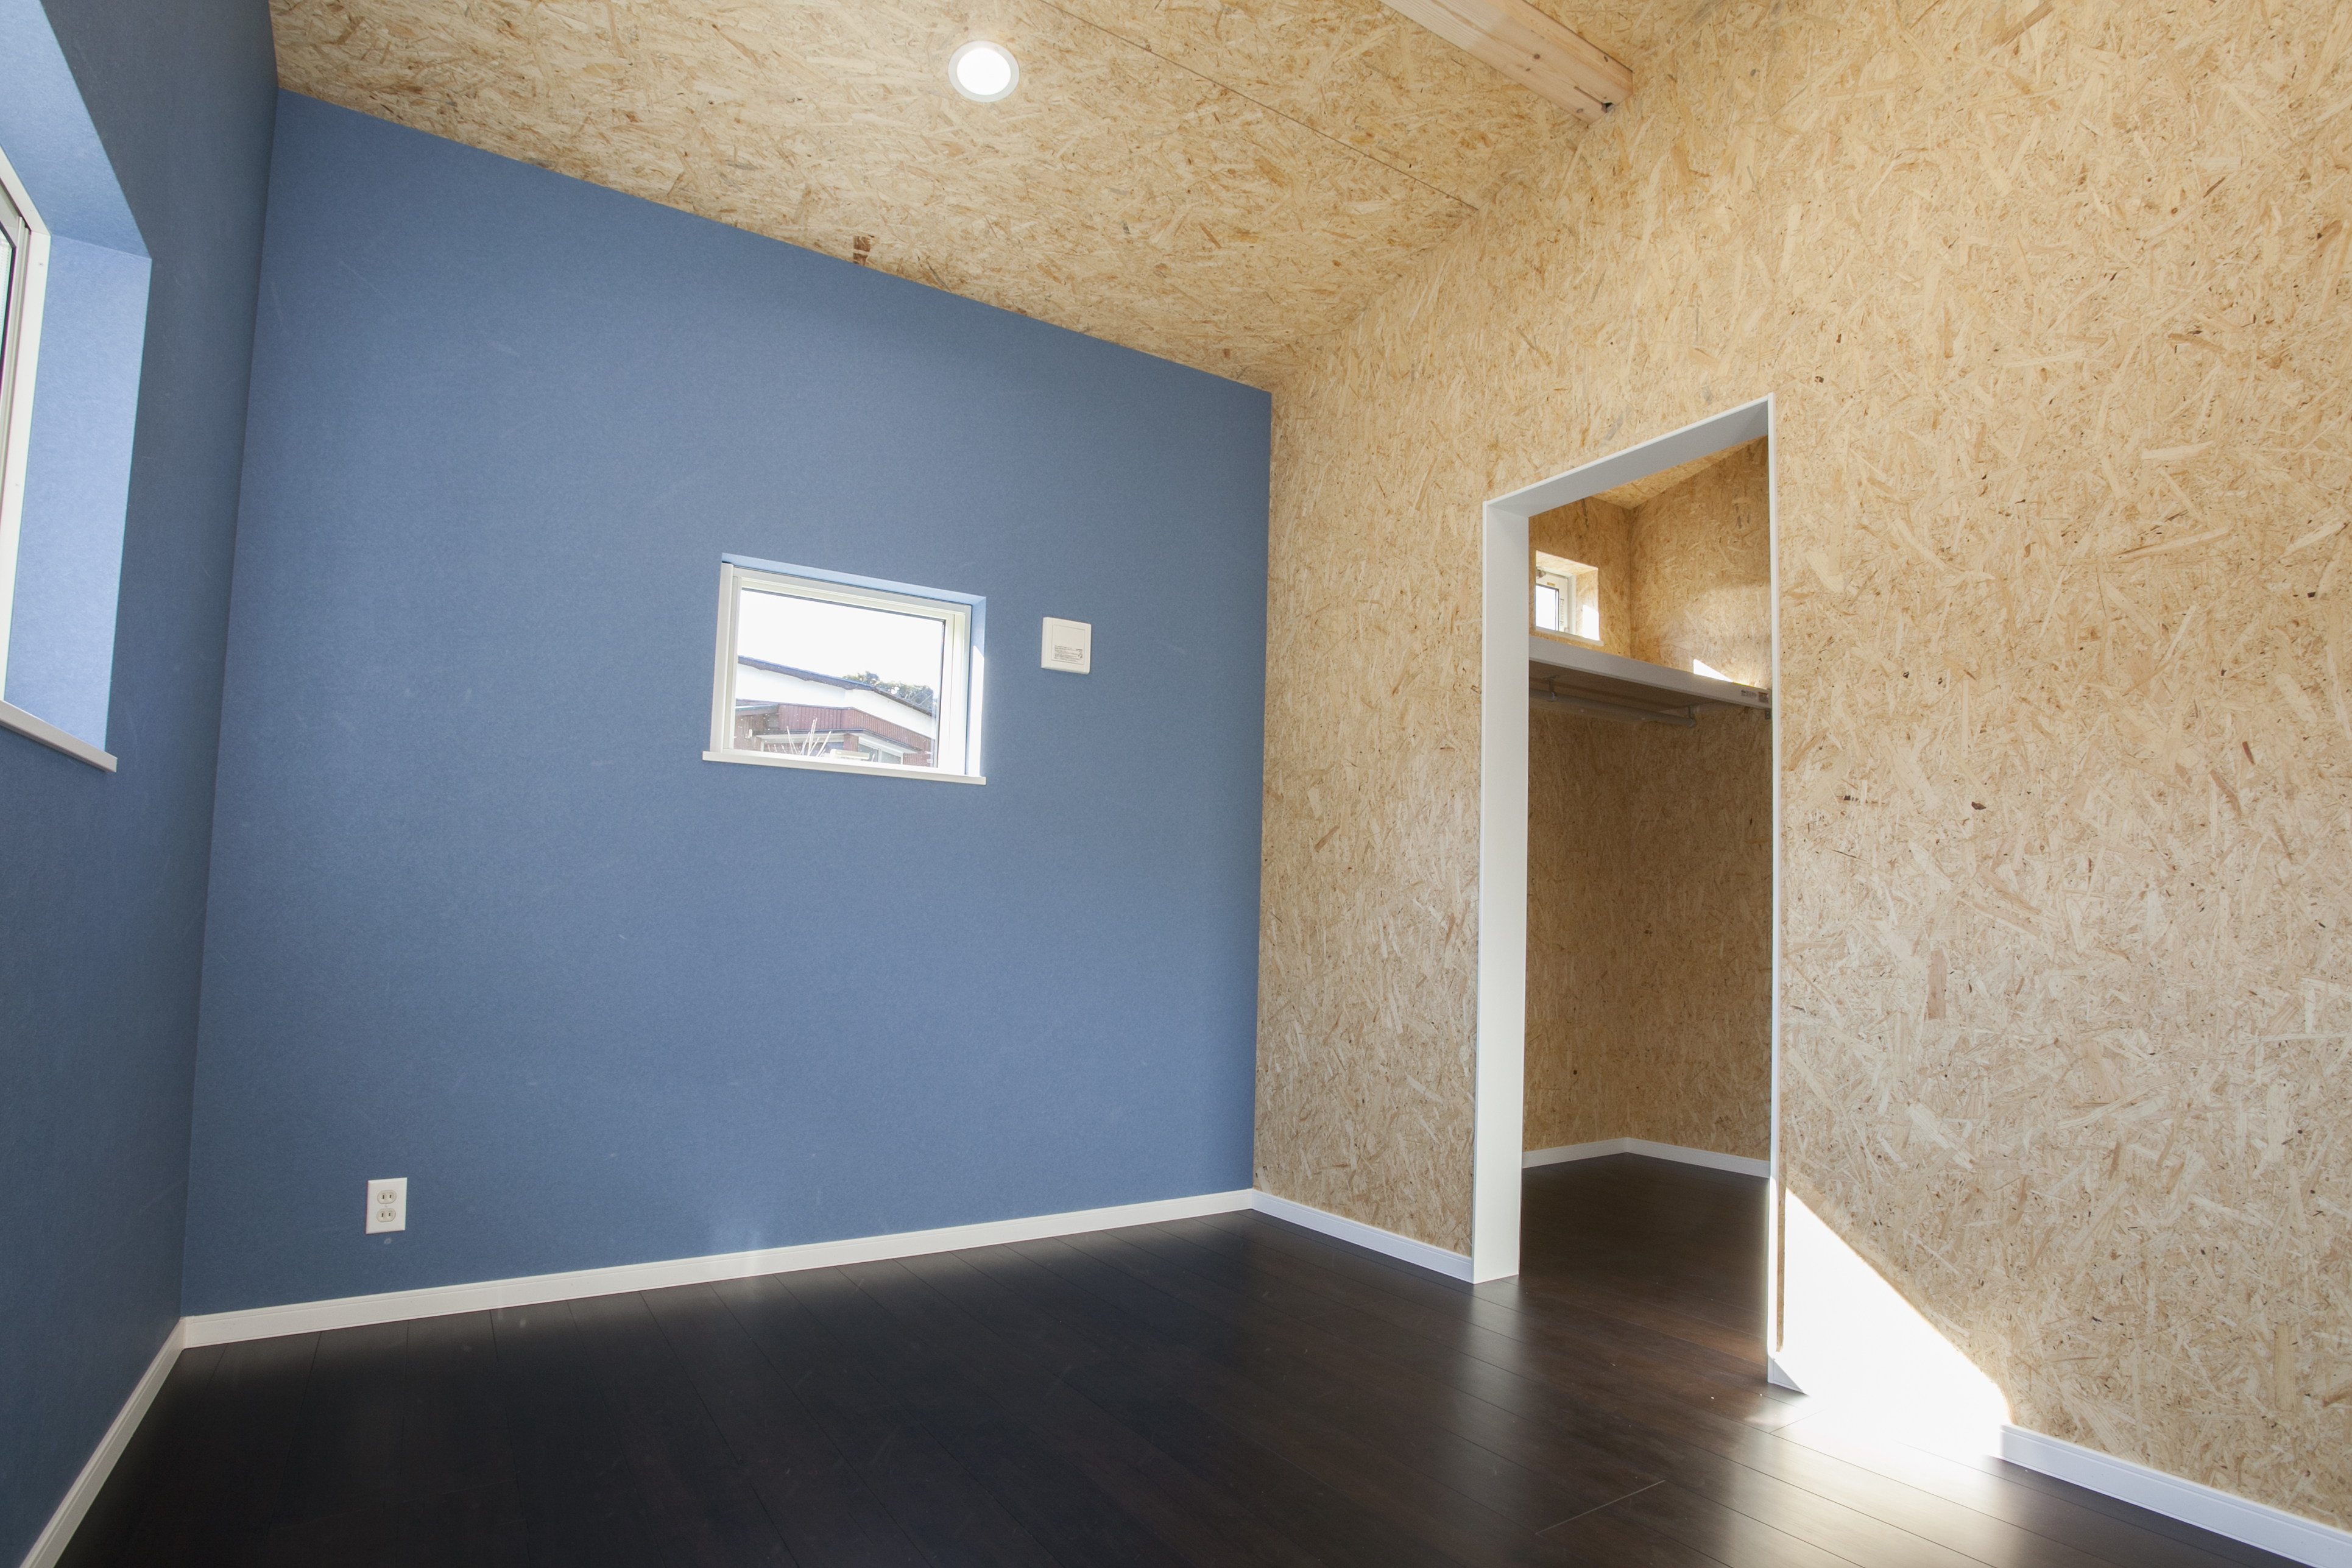 ブルーの壁紙がスタイリッシュな自然素材をふんだんに使用した寝室